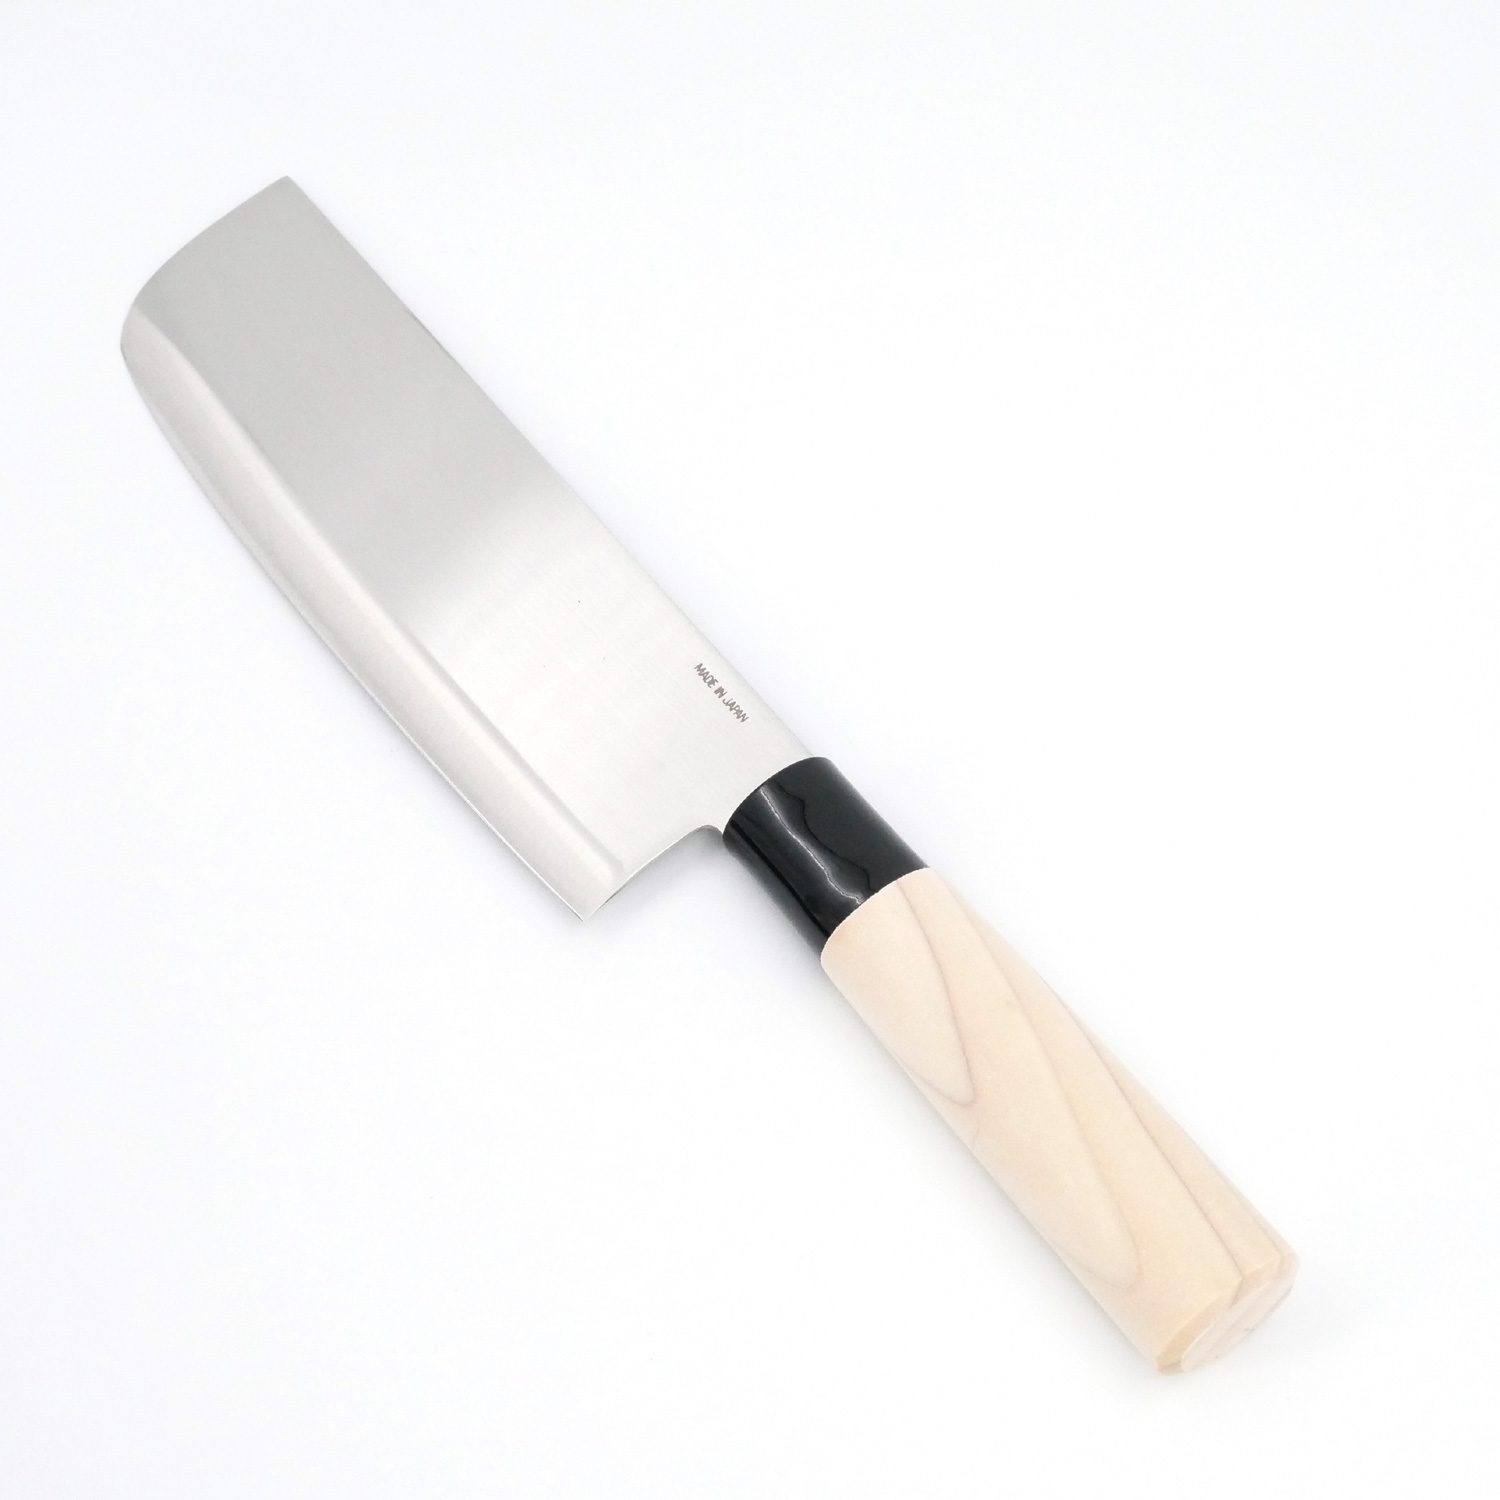 De Colección: Cuchillos japoneses de cocina - La Tercera